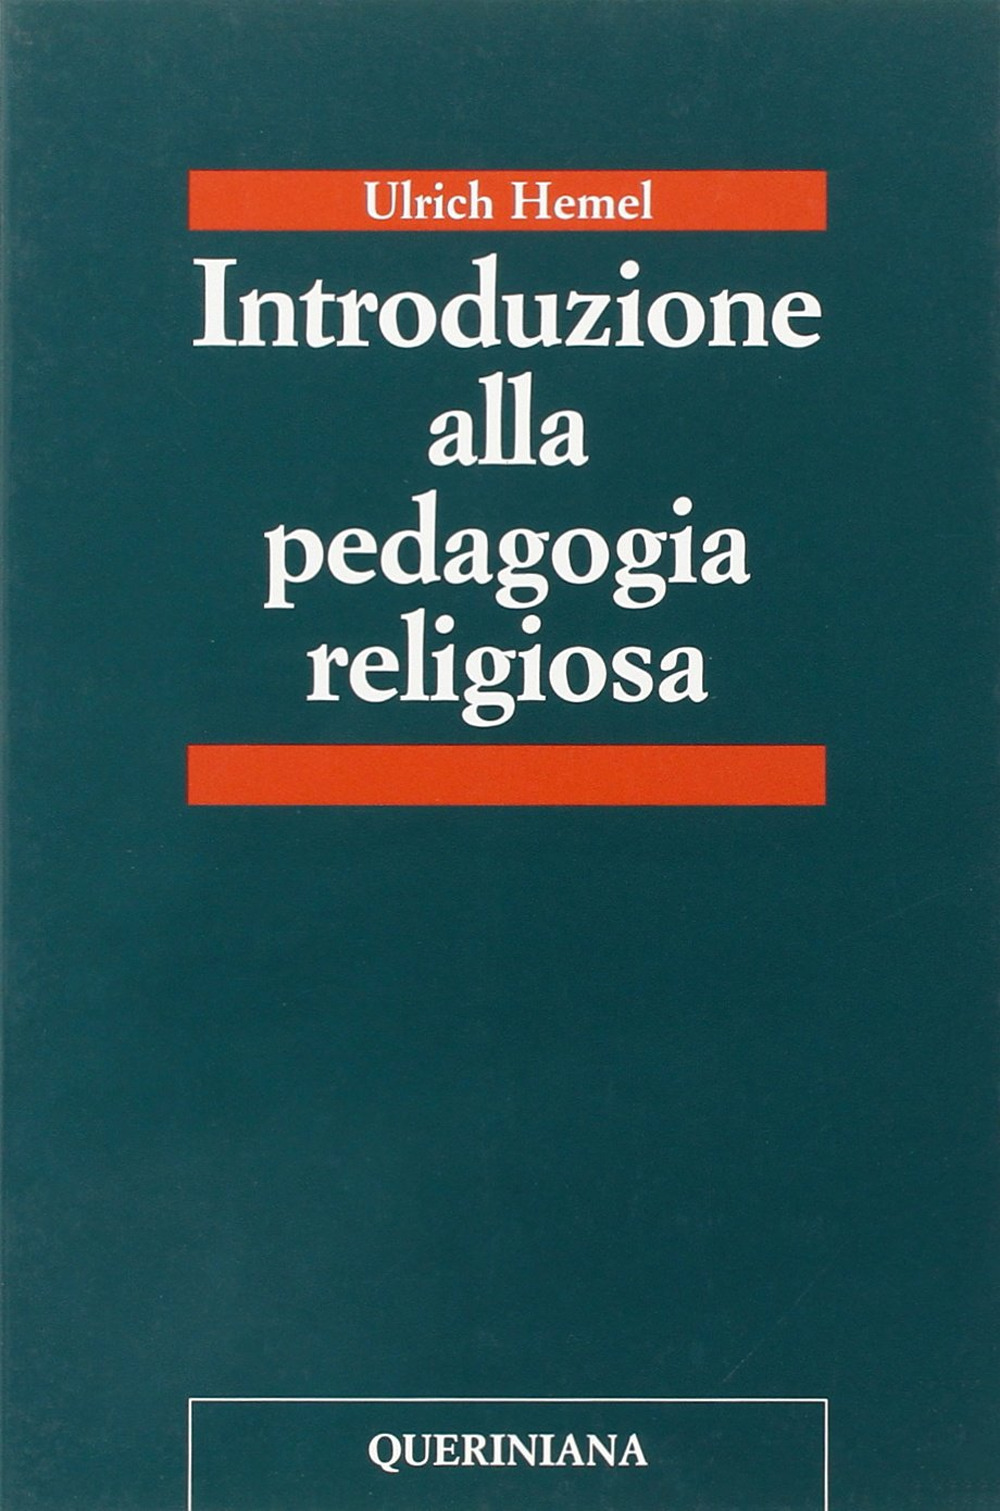 Image of Introduzione alla pedagogia religiosa